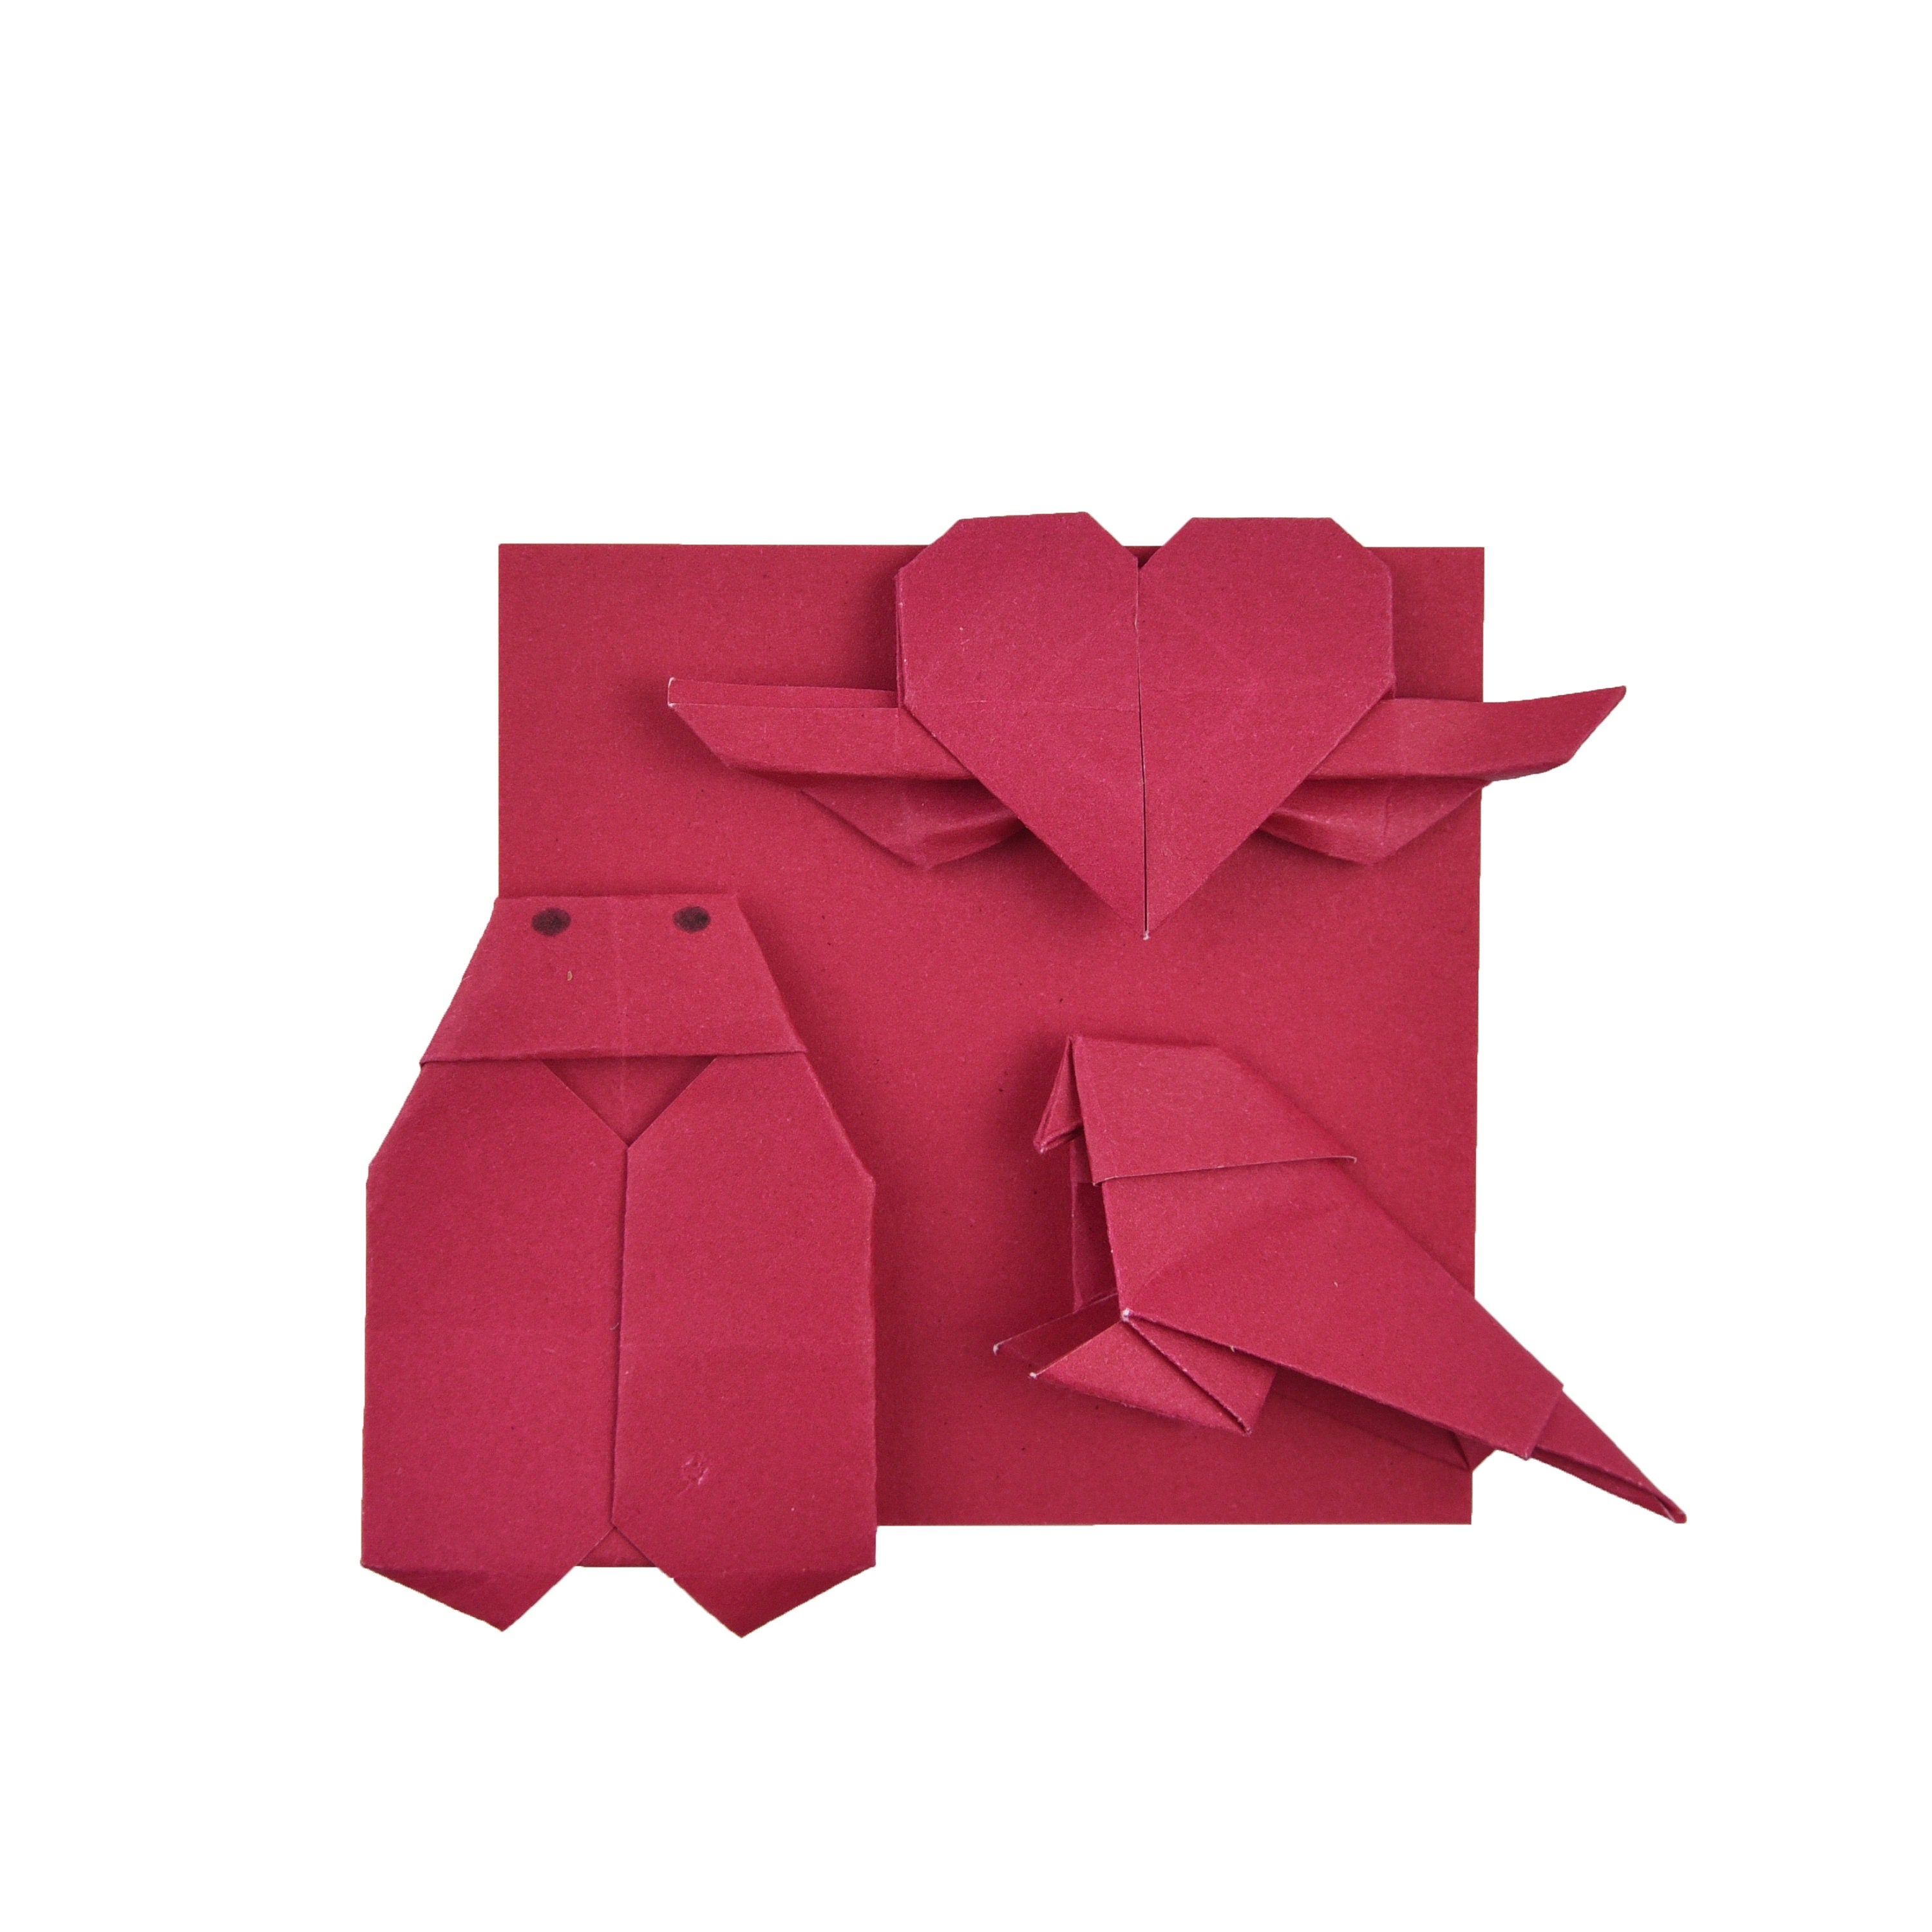 100 fogli di carta origami - 6x6 pollici - Confezione di carta quadrata per piegare, gru origami e decorazioni - S15